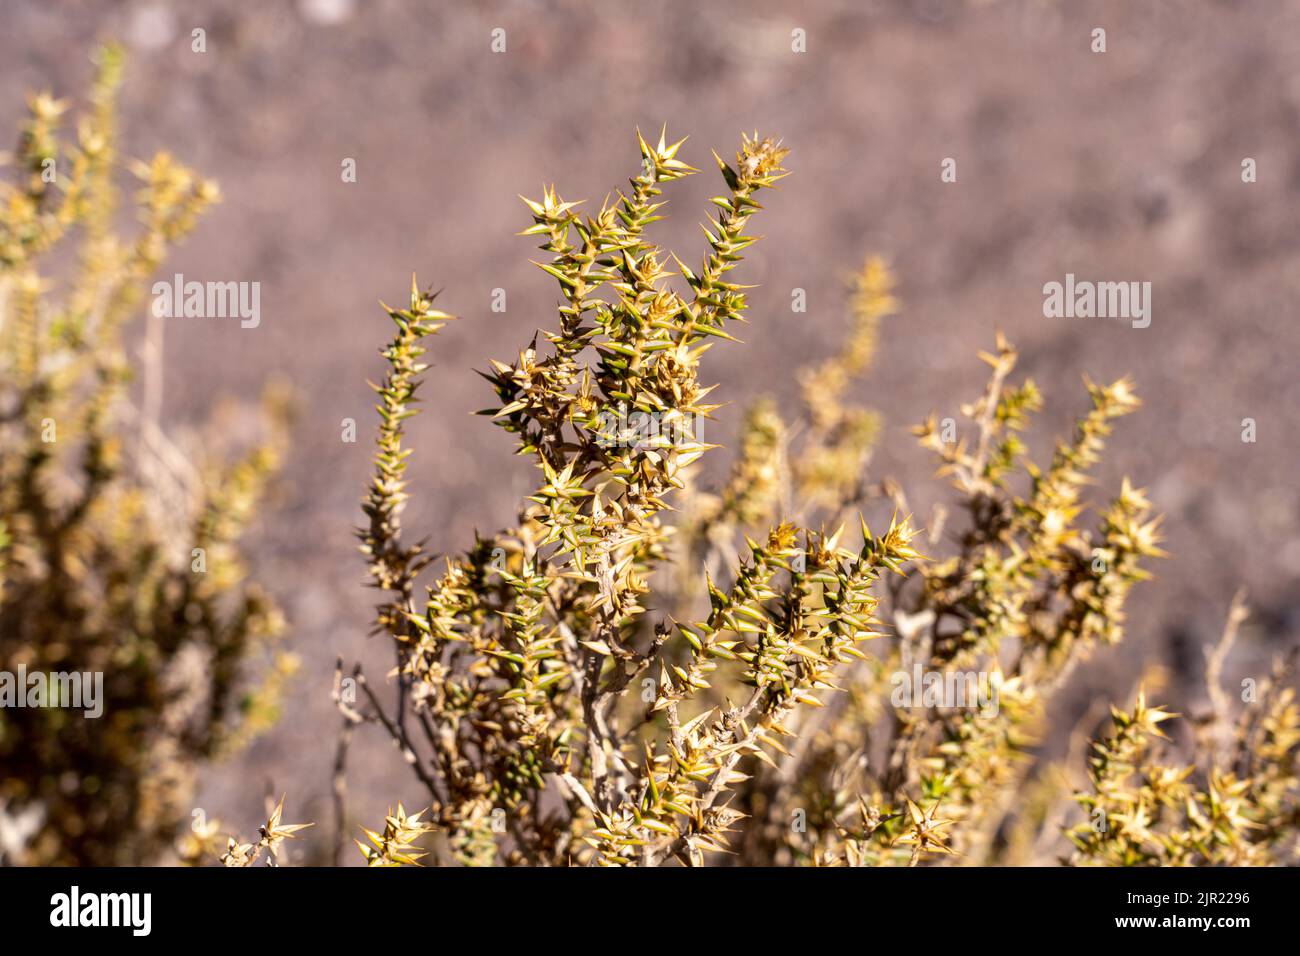 Chuquiraga atacamensis Kuntze, Valle del Arcoiris or Rainbow Valley in the Atacama Desert near San Pedro de Atacama, Chile. Stock Photo